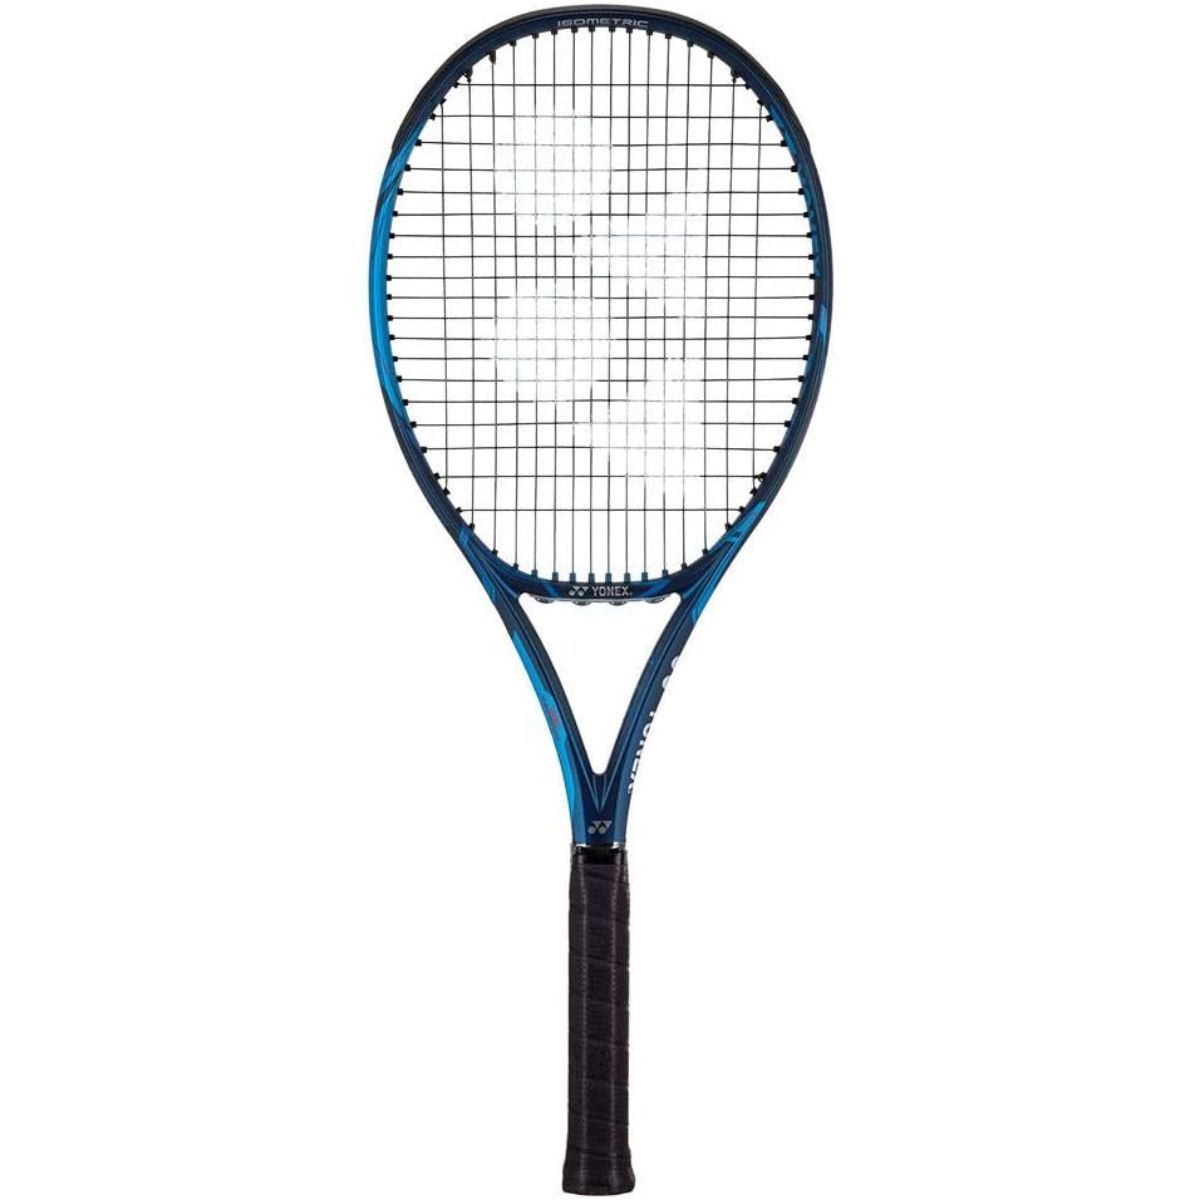 Yonex Ezone 100 Tennis Racket Review